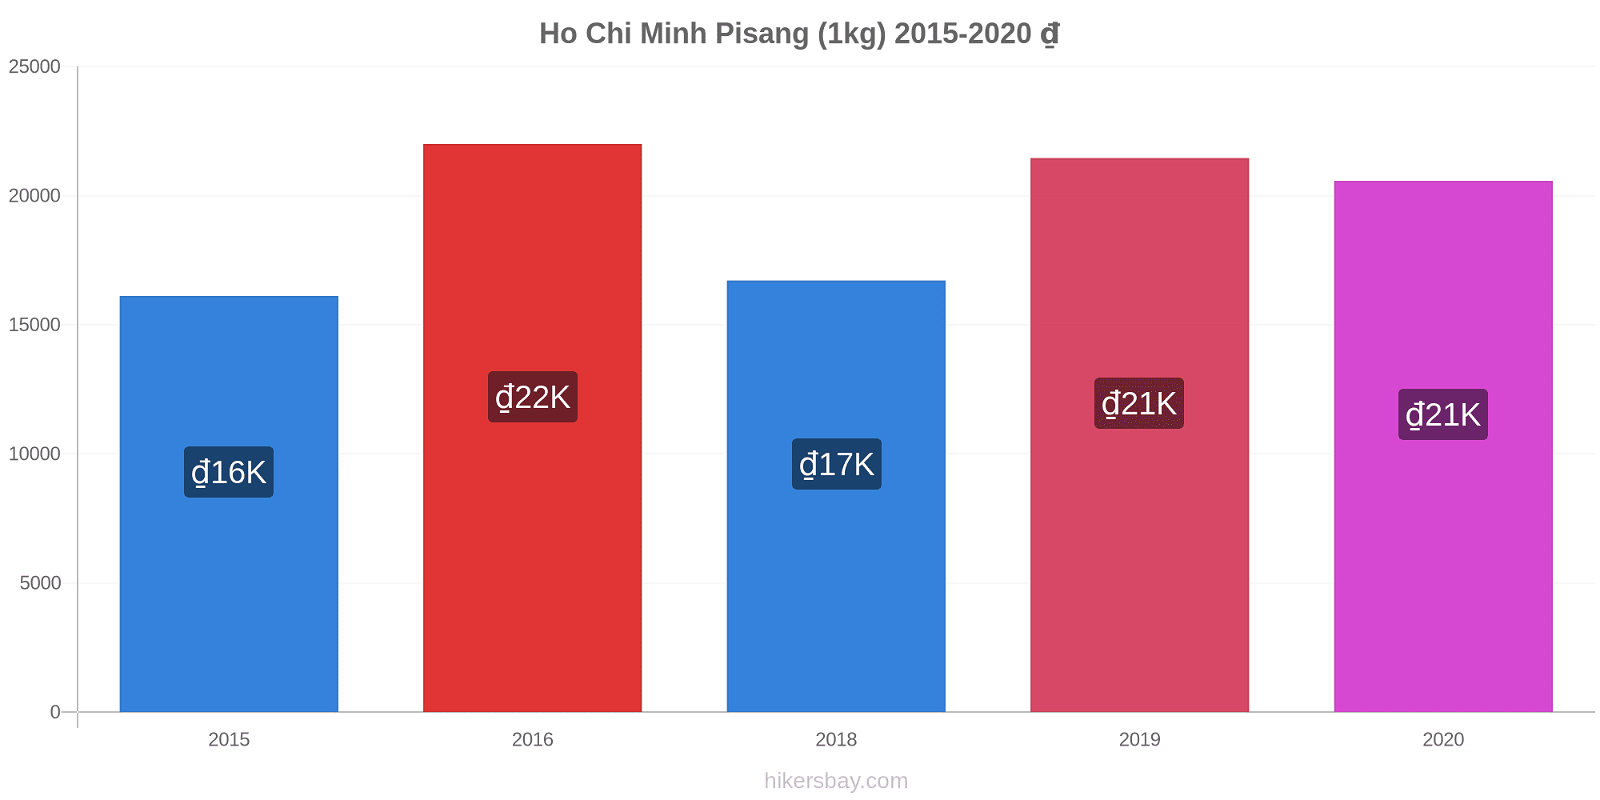 Ho Chi Minh perubahan harga Pisang (1kg) hikersbay.com